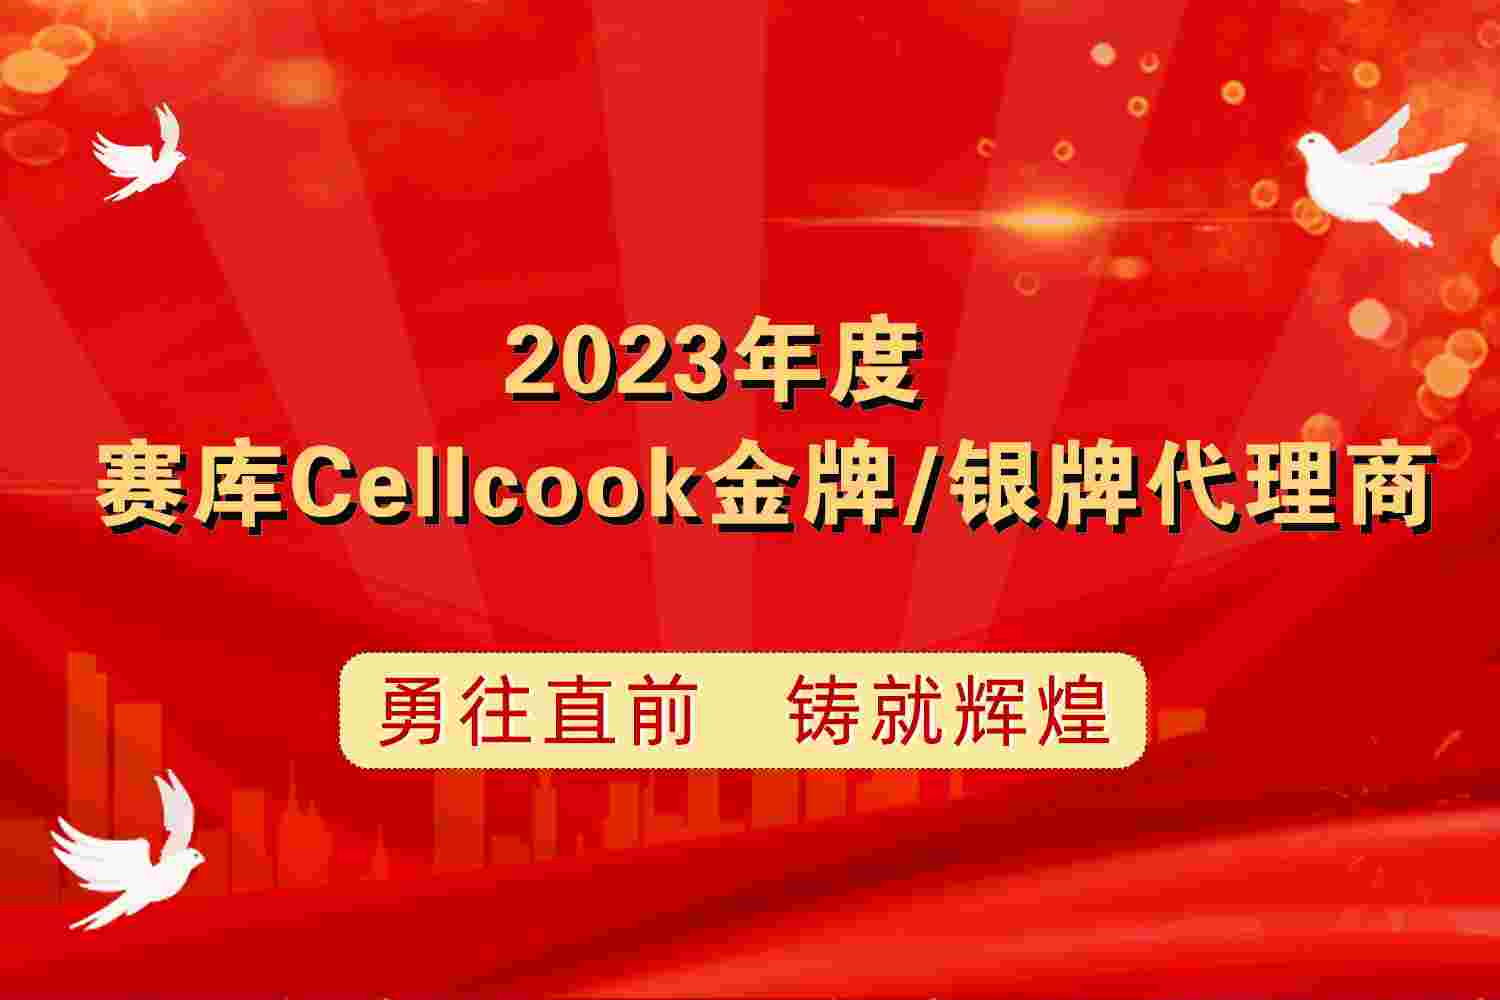 关于授予部分代理商 “2023年度赛库Cellcook金牌/银牌代理商”称号的通知函